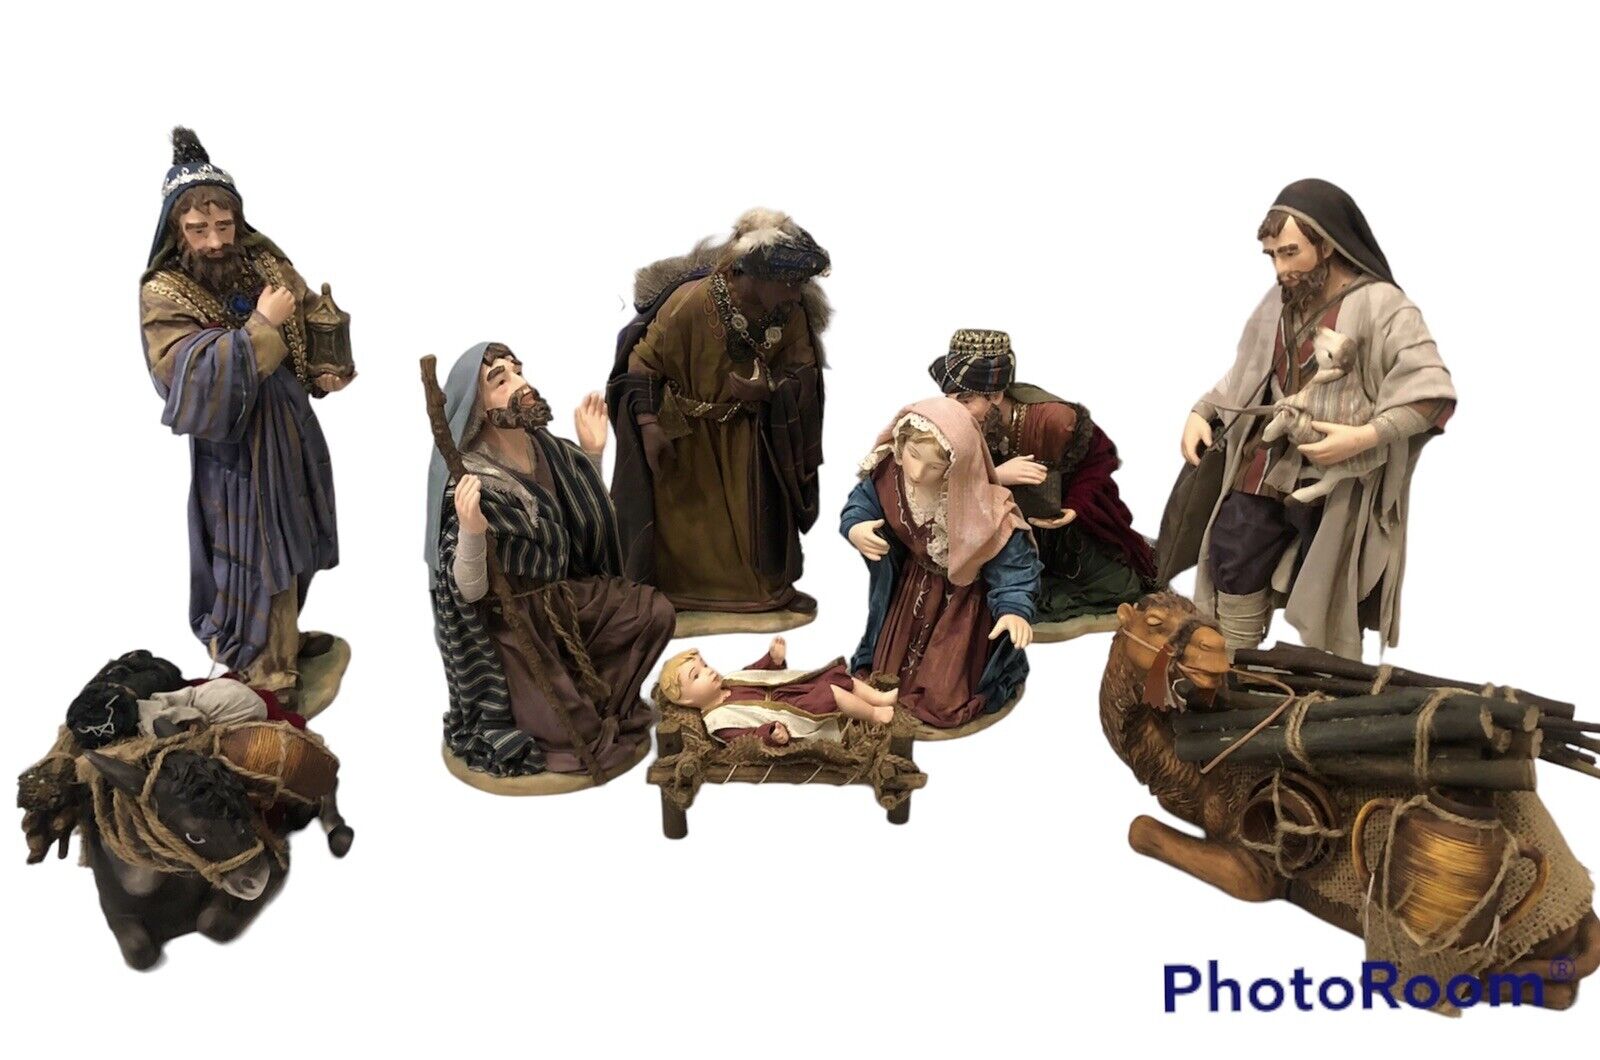 GRANDEUR NOEL Fabric Mache Collector Edition 9 Piece Nativity Set 2002 Read